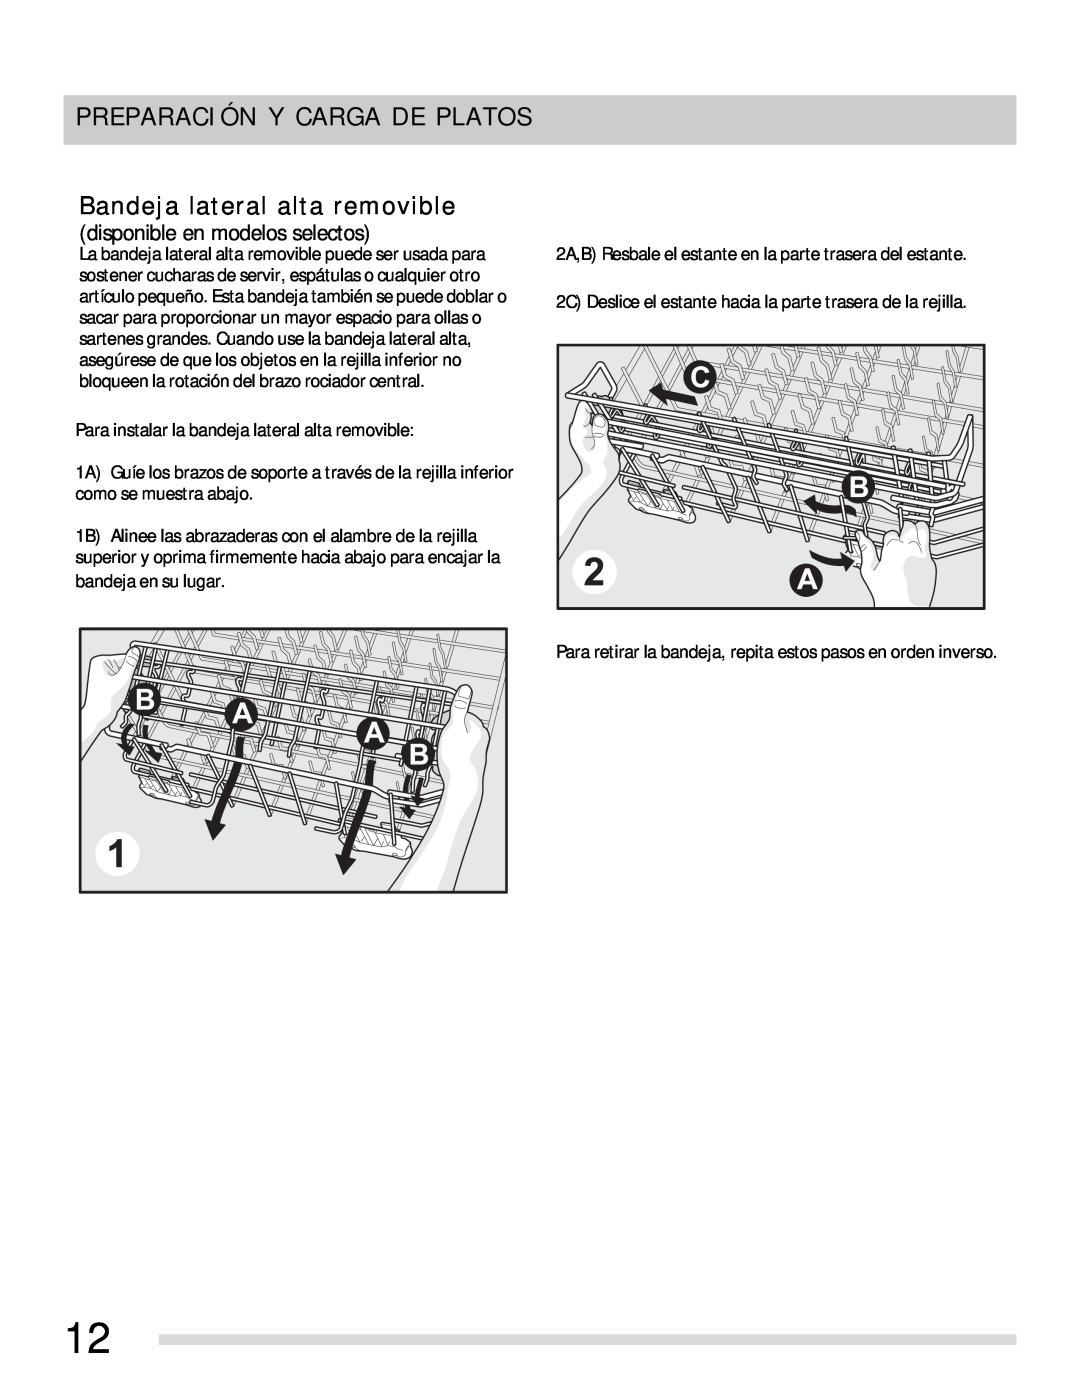 Frigidaire 154768703 manual Bandeja lateral alta removible, Preparación Y Carga De Platos, disponible en modelos selectos 